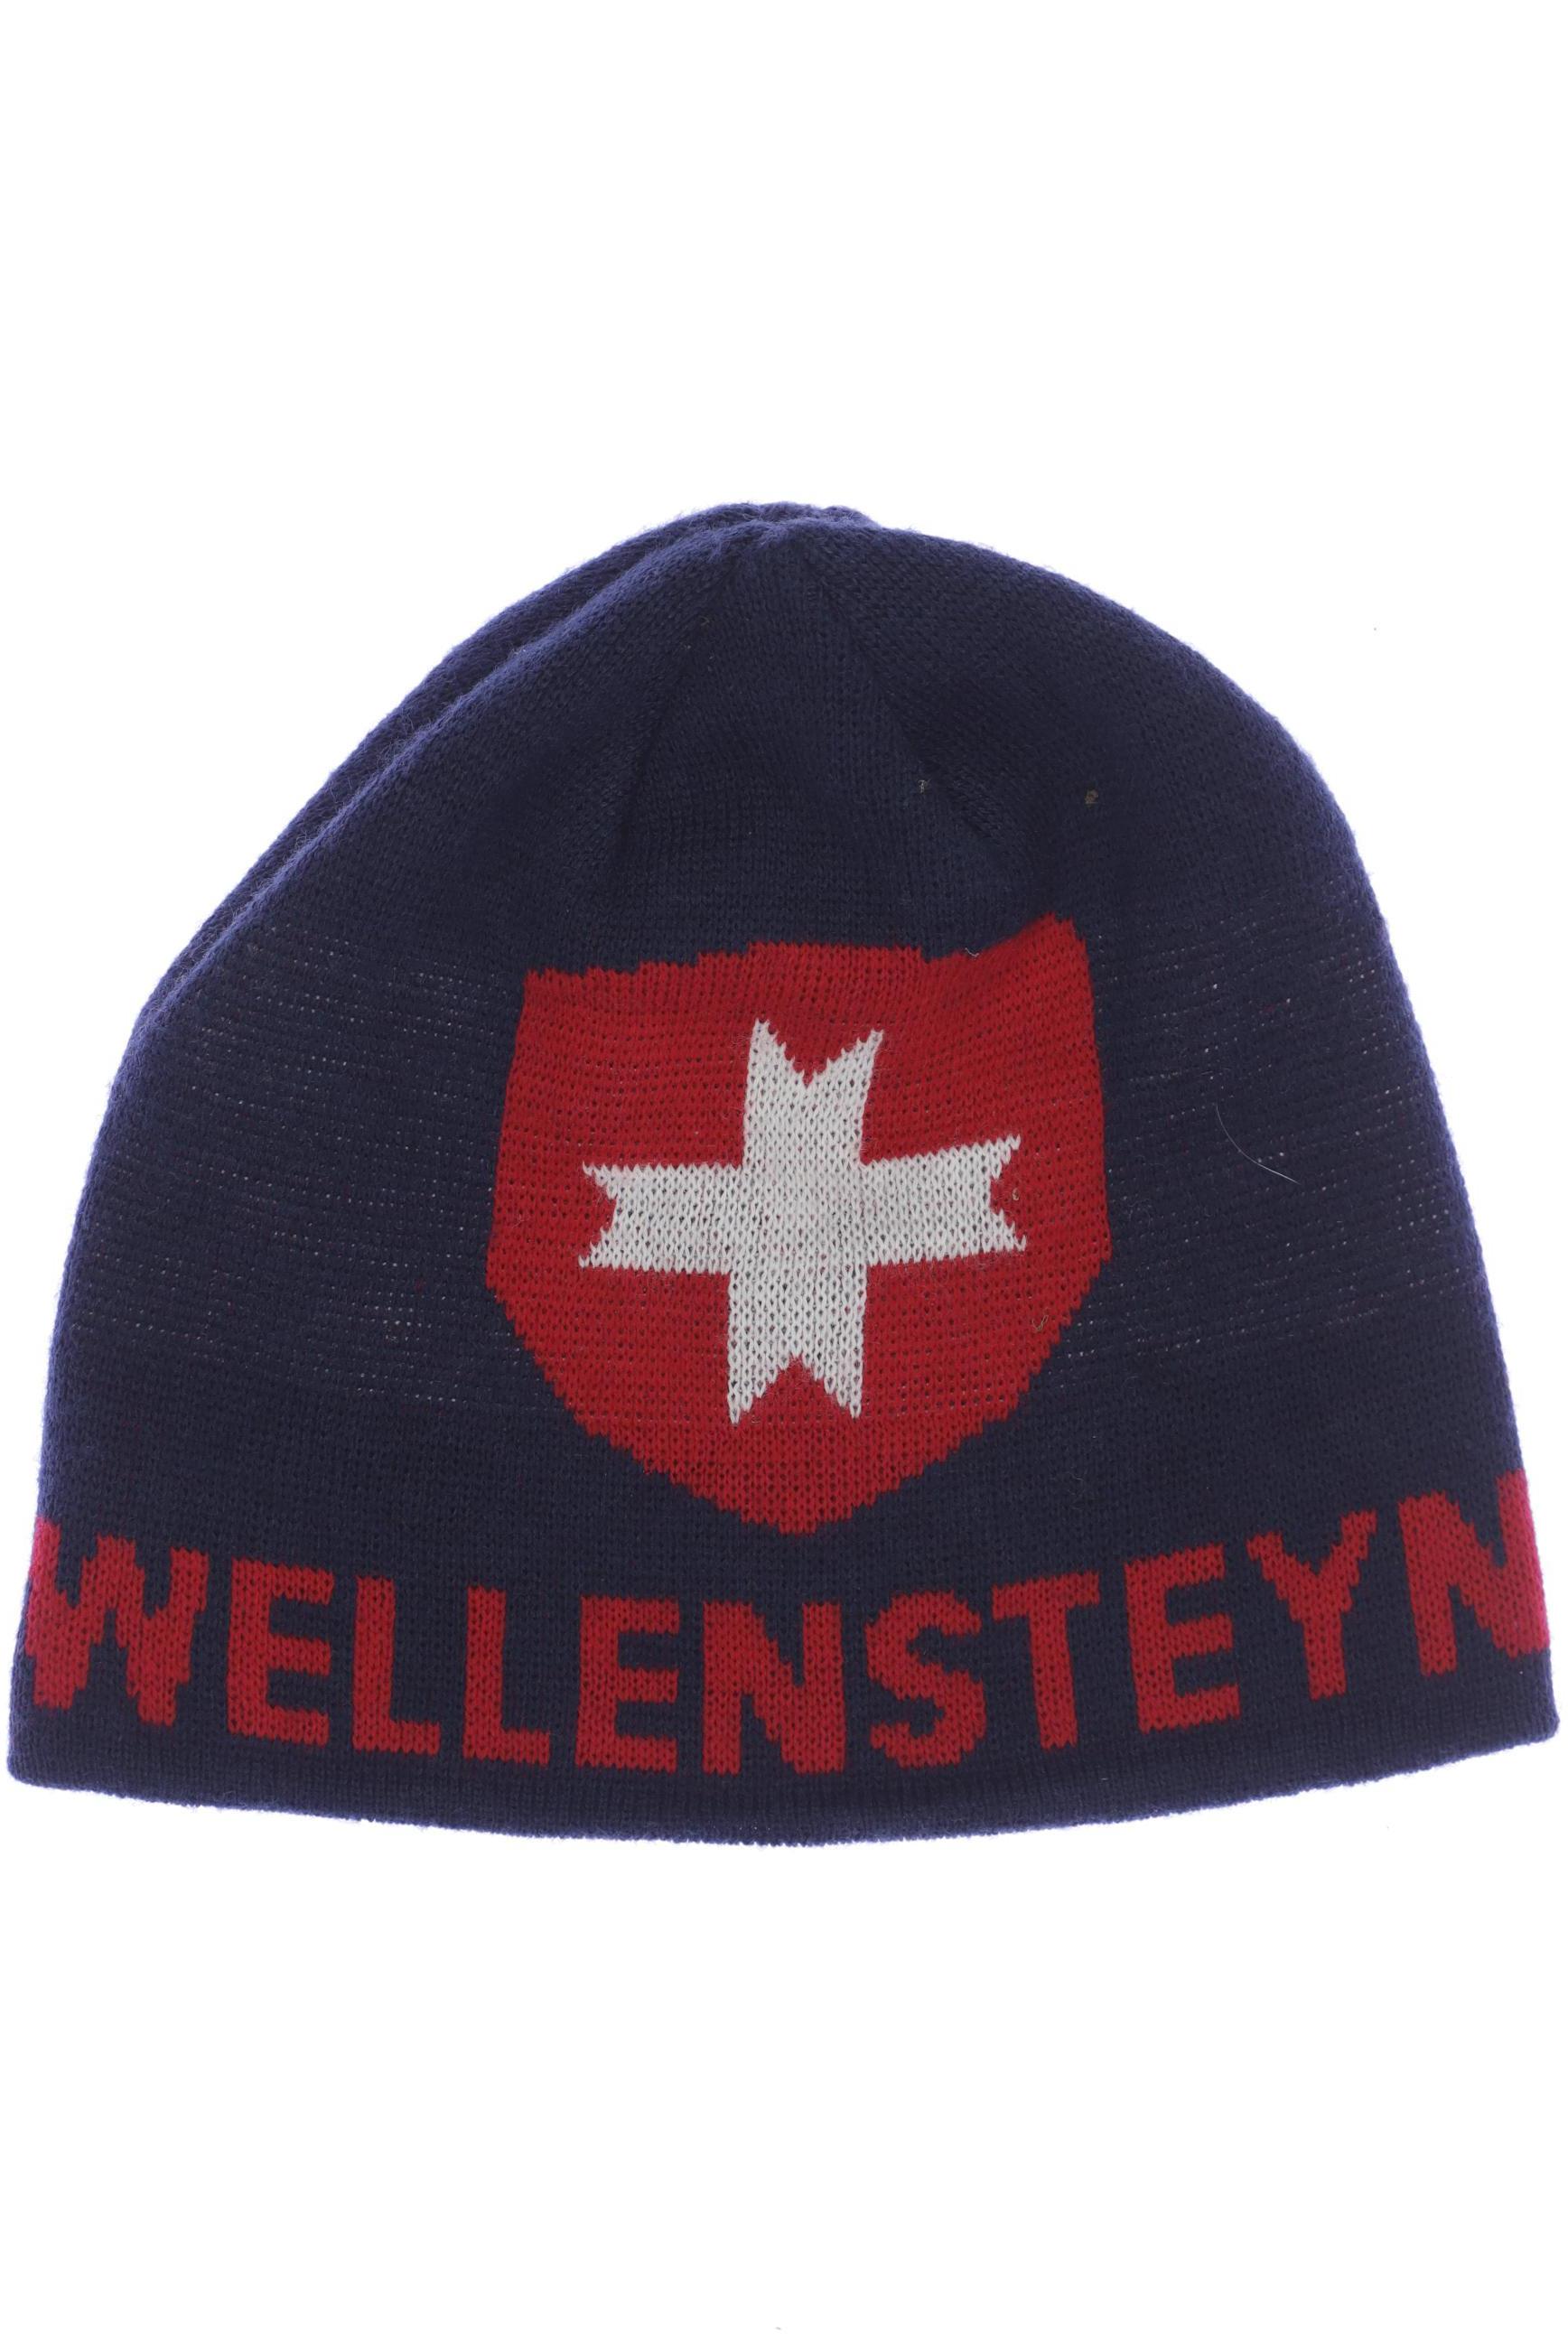 Wellensteyn Herren Hut/Mütze, marineblau, Gr. uni von Wellensteyn